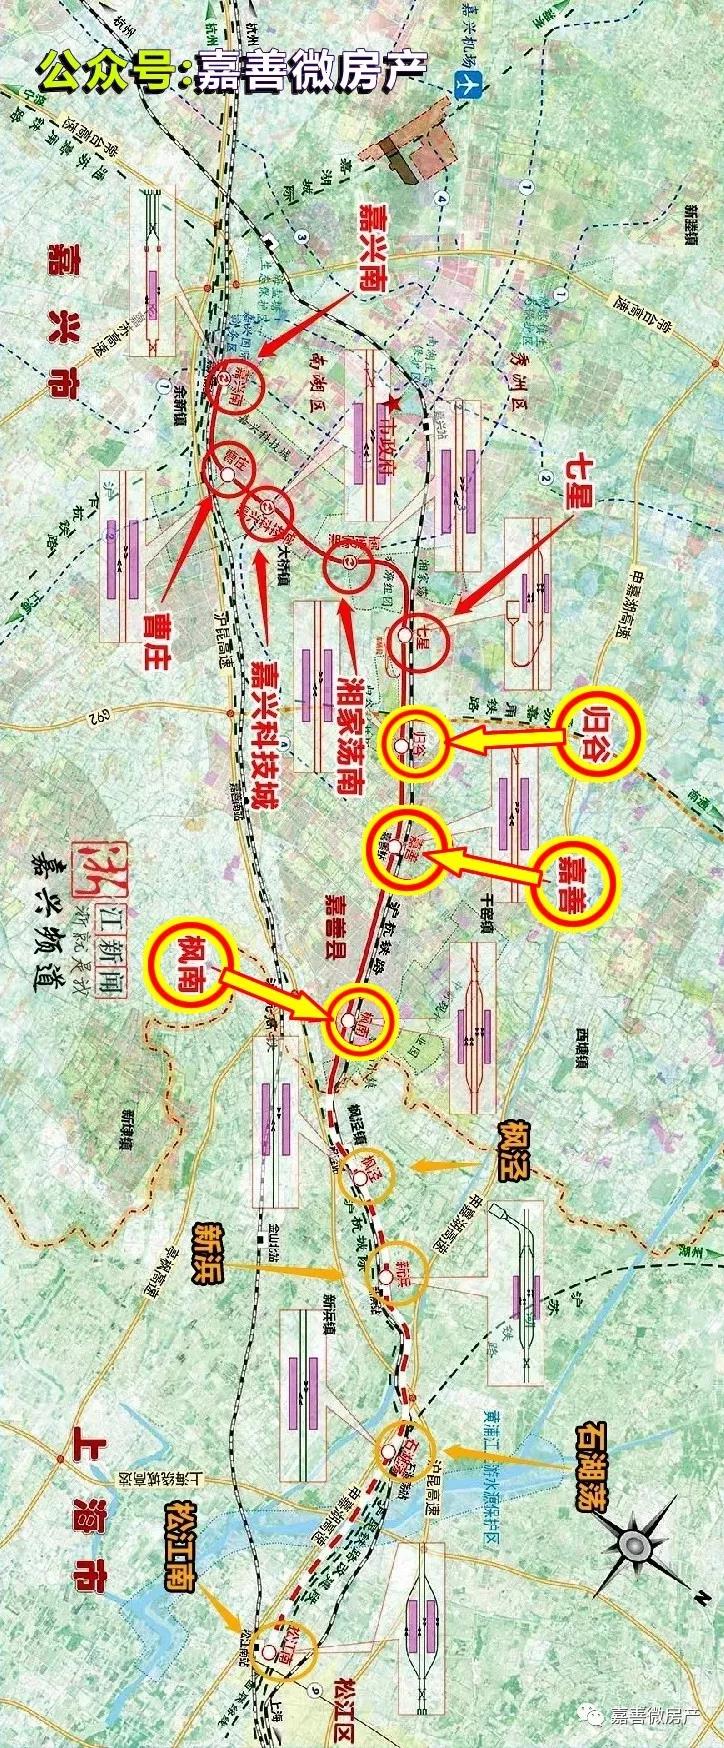 沪嘉城际铁路先行工程已经复工,确保如期完成!